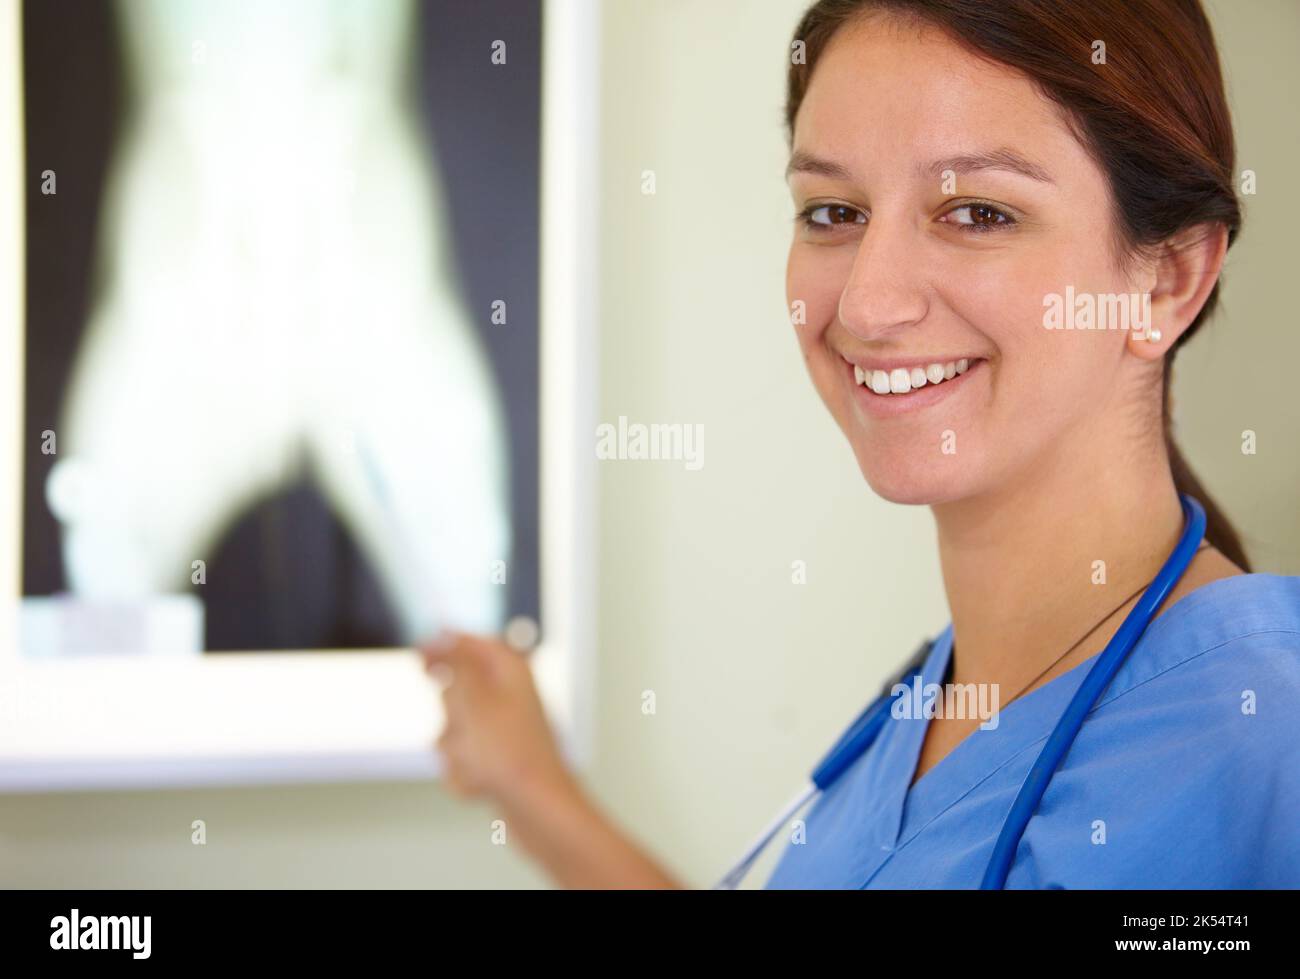 L'ospedale è la mia seconda casa. Ritratto di uno studente di medicina sorridente che indica un'immagine di un radiografia. Foto Stock